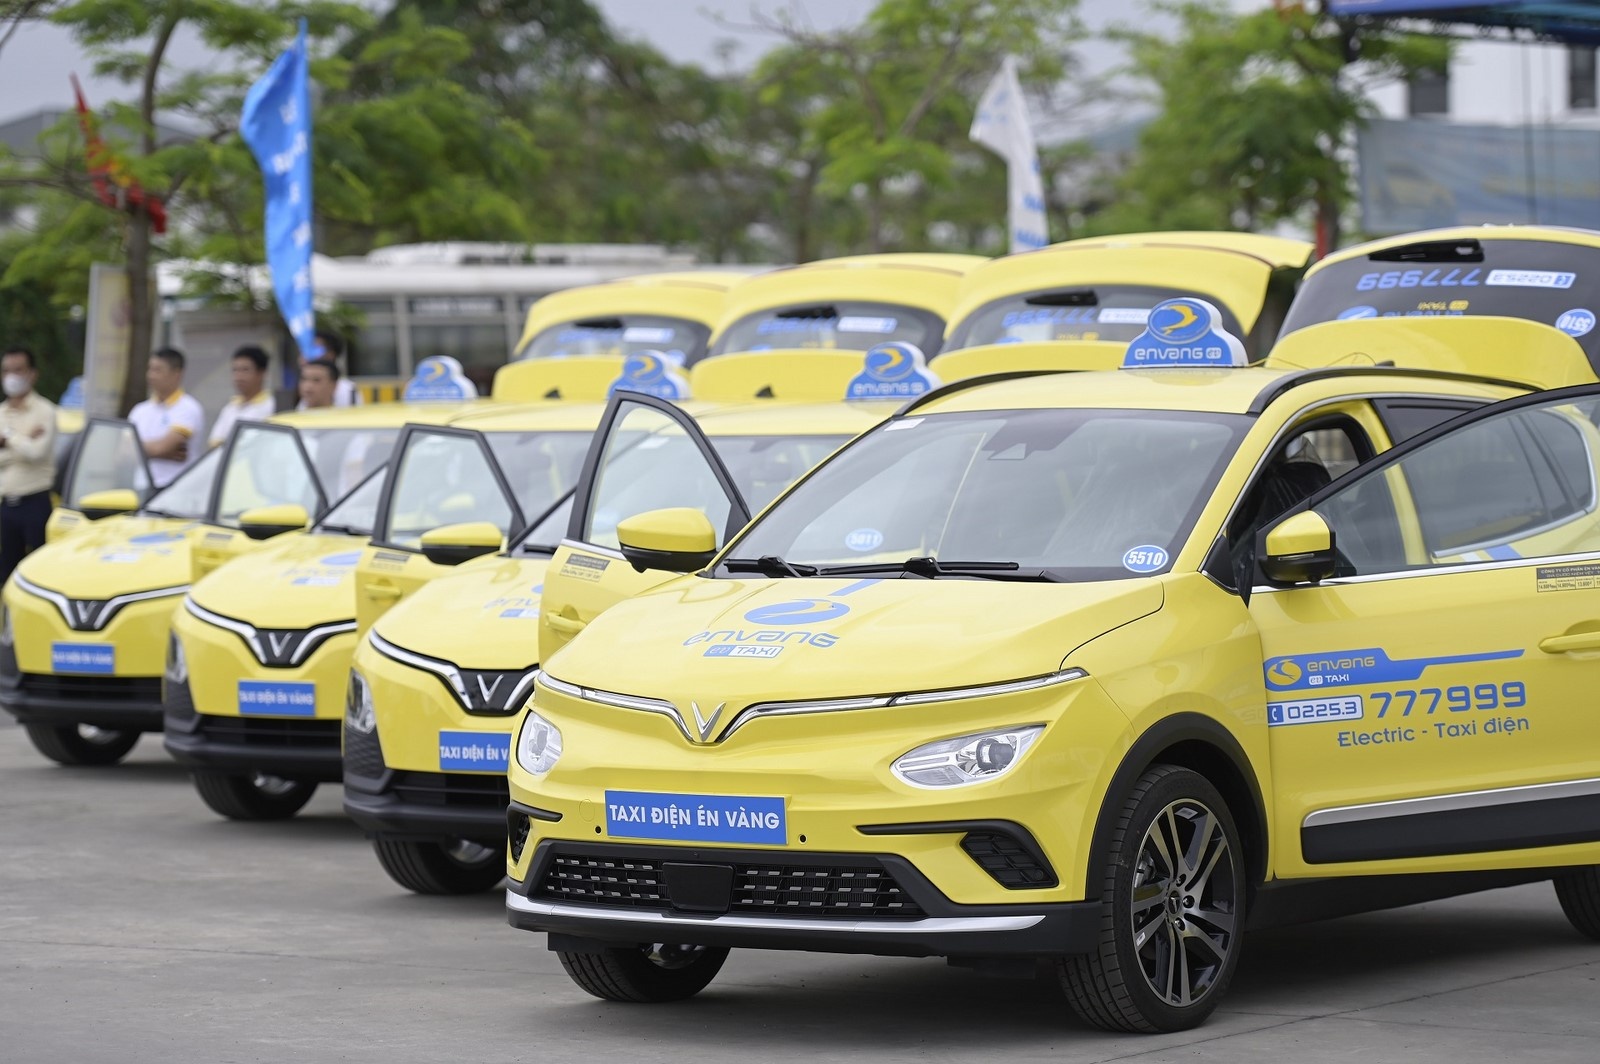 Én Vàng mua và thuê 150 xe ô tô điện Vinfast, ra mắt dịch vụ taxi điện đầu tiên tại Hải Phòng